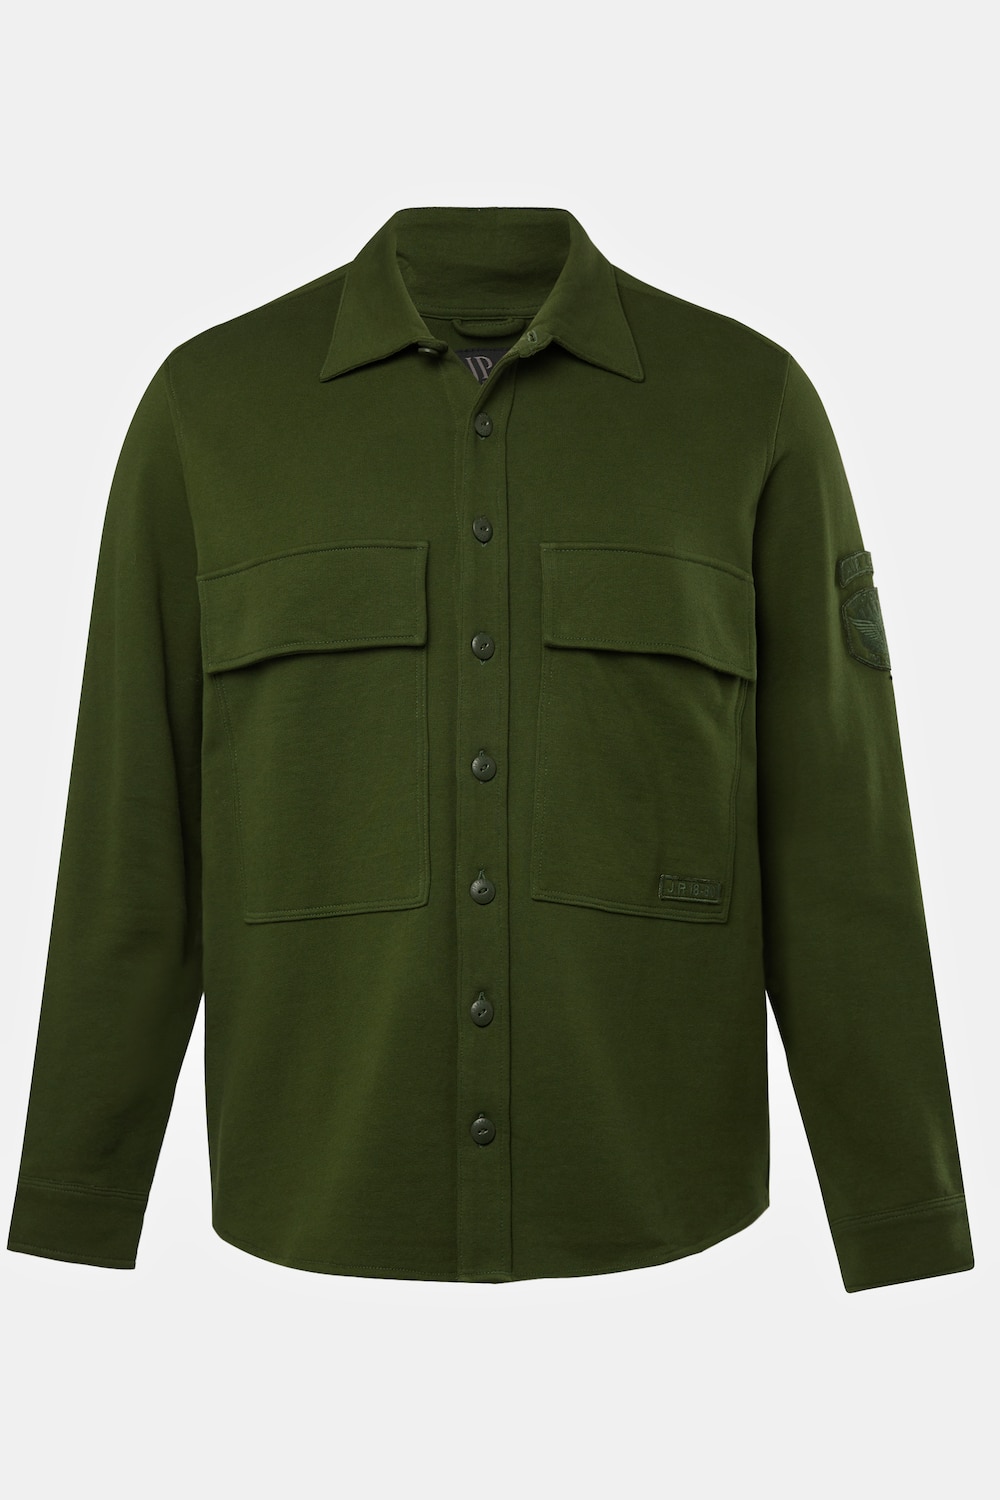 Grote Maten Overhemd, Heren, groen, Maat: 3XT, Katoen, JP1880